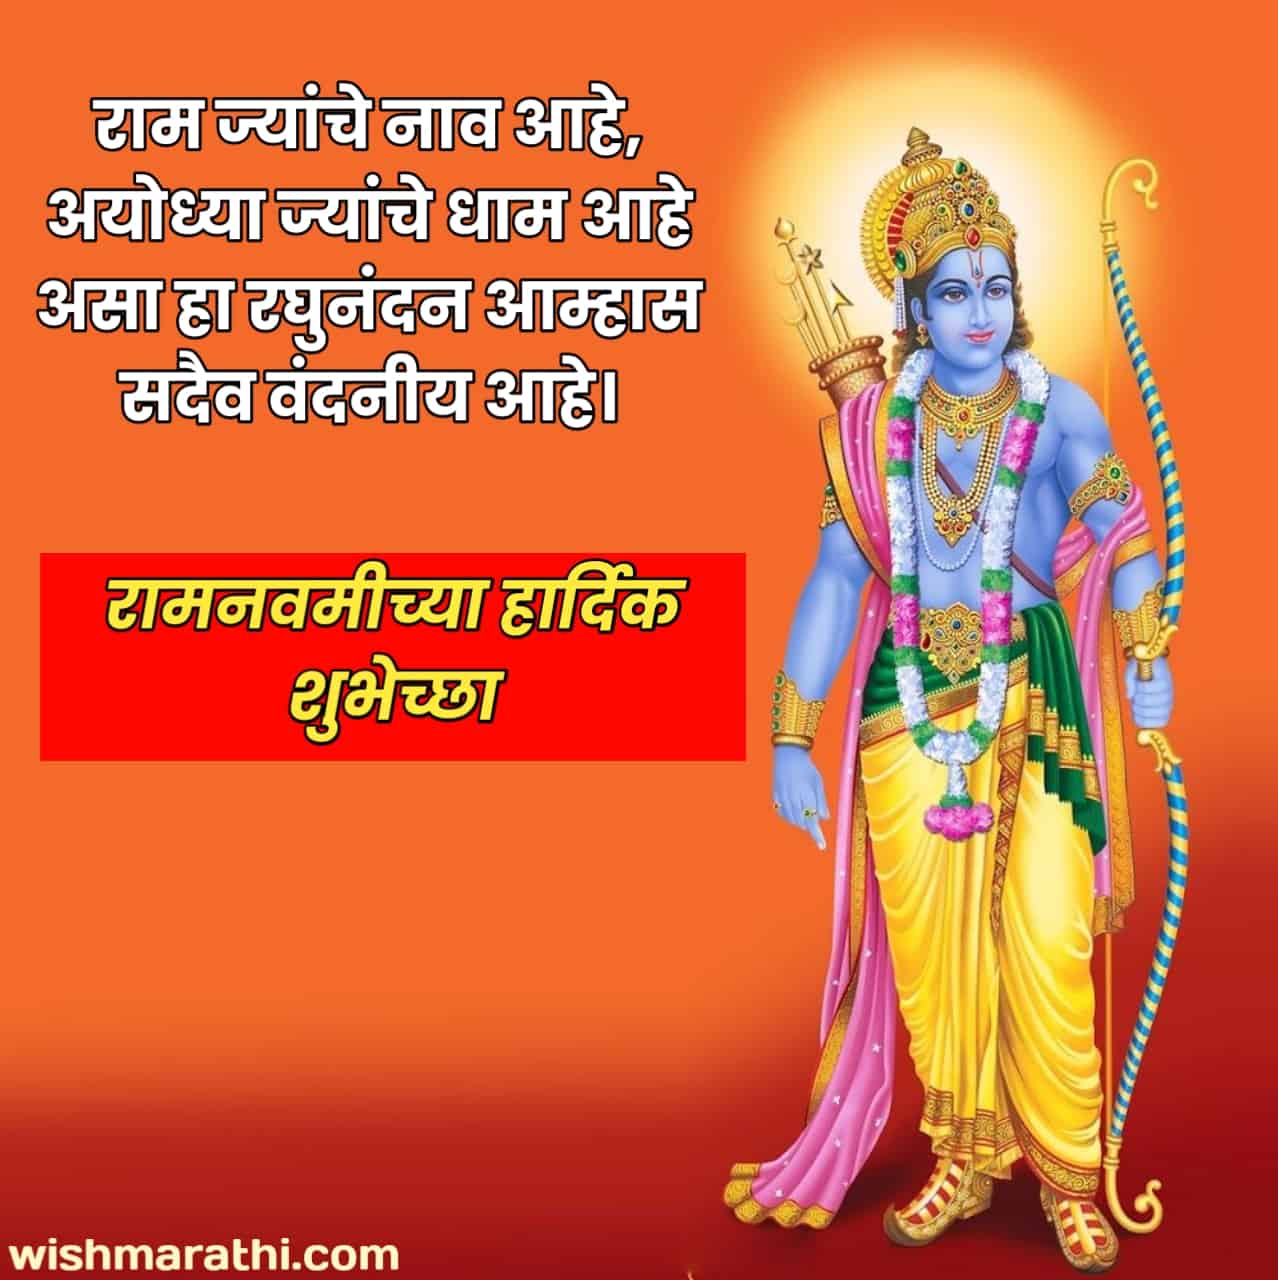 ram navami wishes in marathi